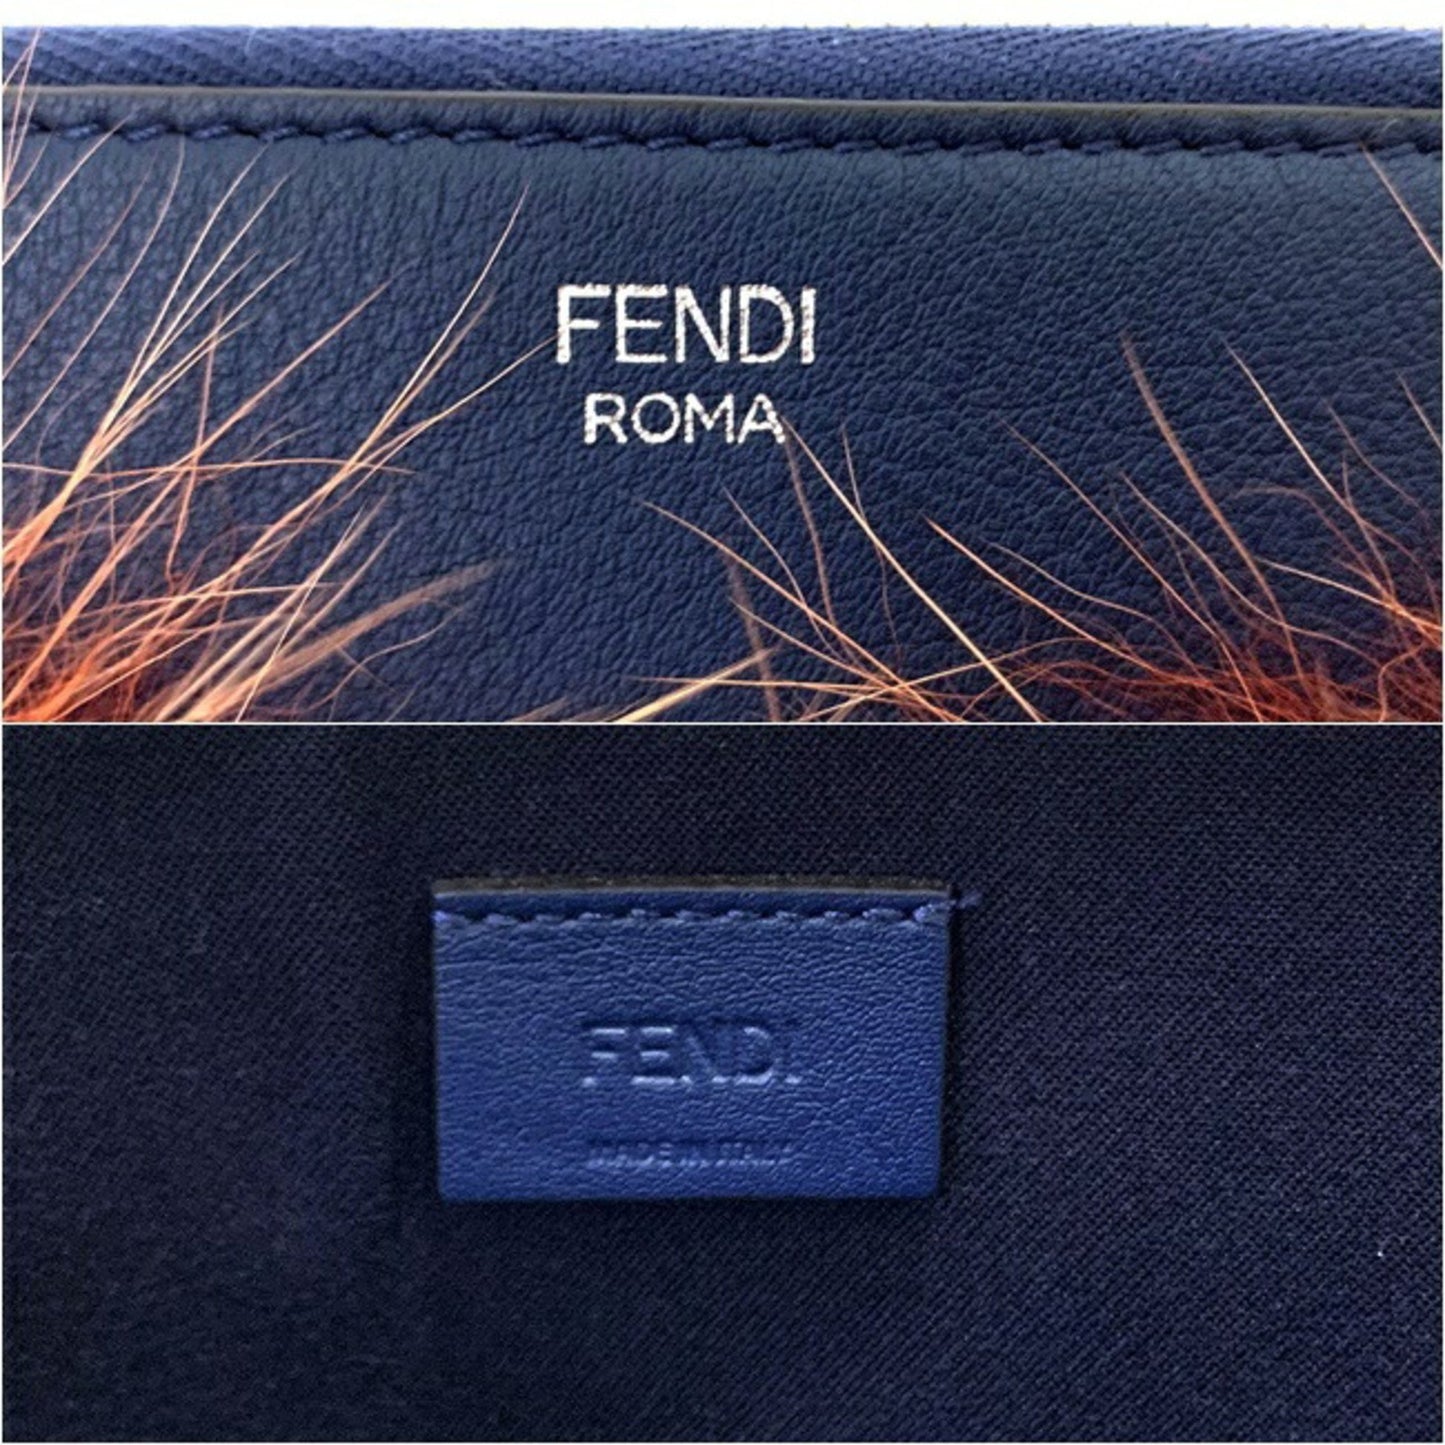 Fendi Unisex Fendi Monster Leather Handbag in Navy